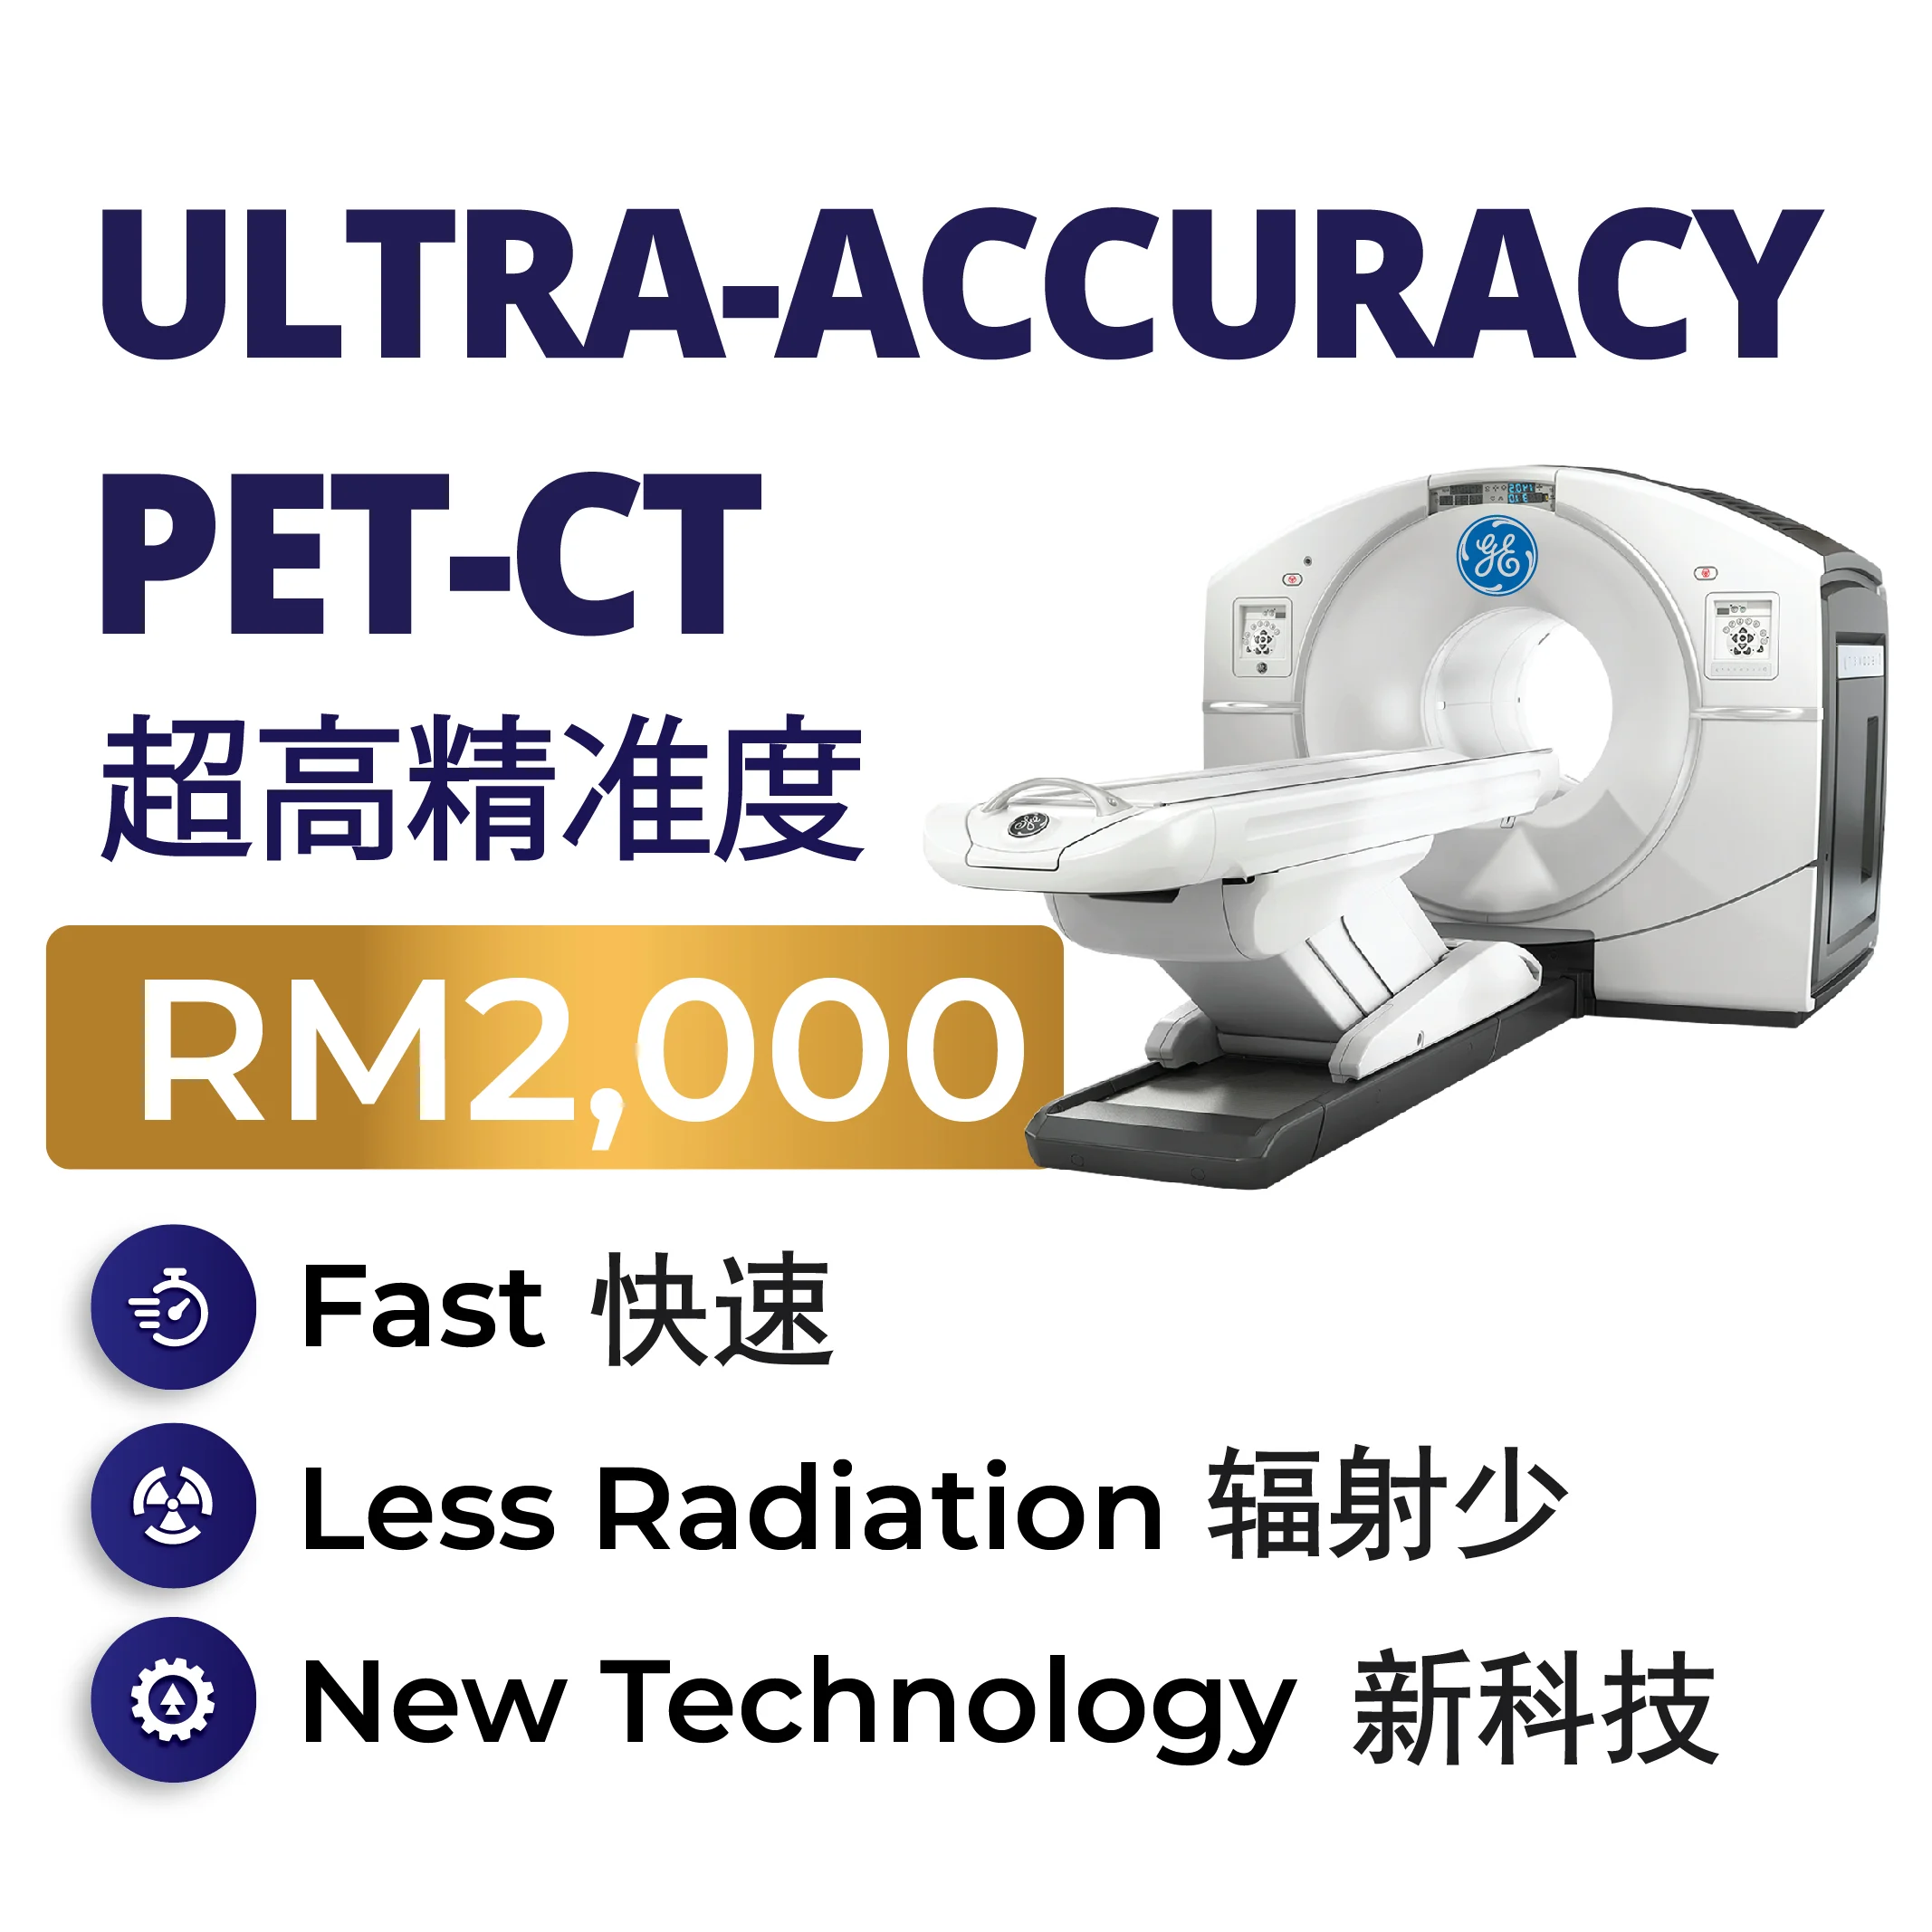 ultra-accuracy-pet-sc-scan-service-beacon-hospital-malaysia